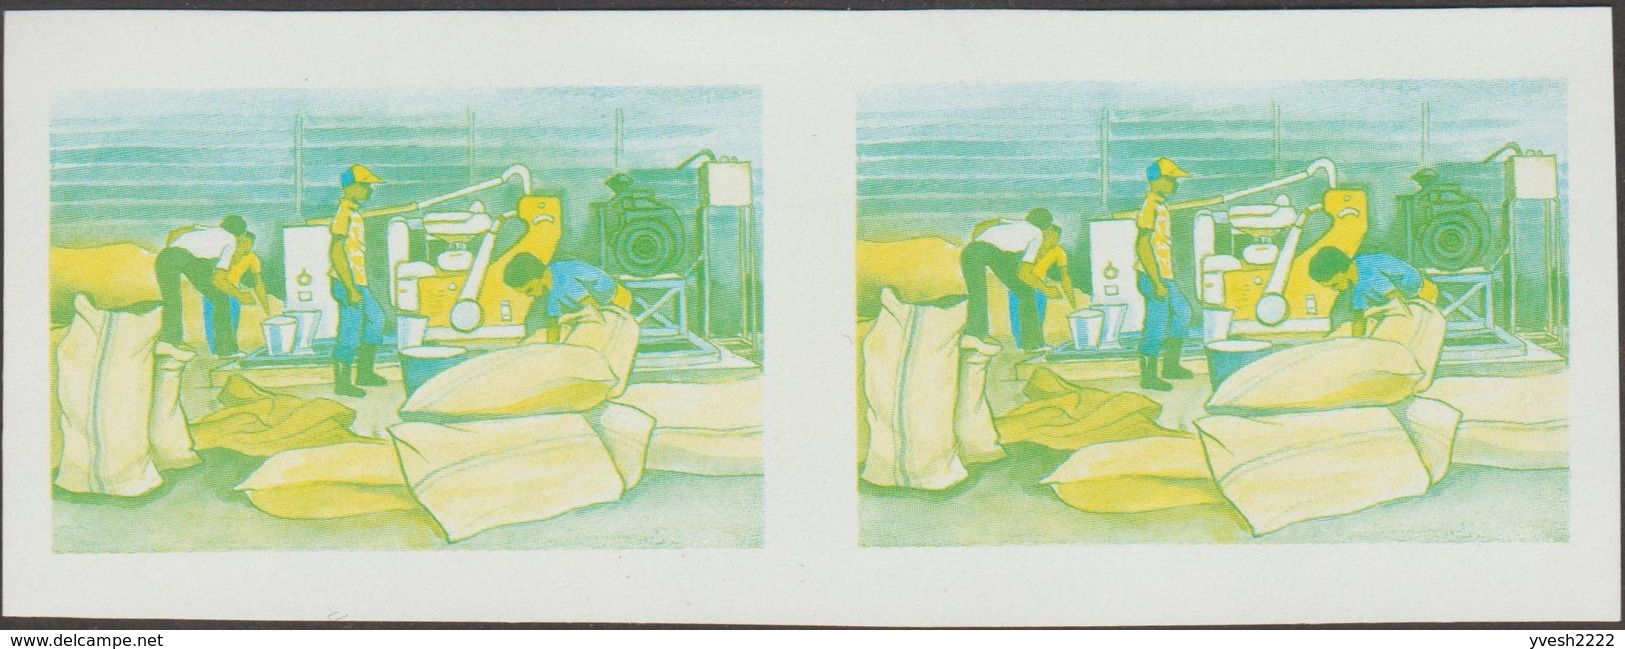 Rwanda 1985 COB 1235. 7 essais de couleurs en paires. Année de la production vivrière. Transformation des produits. Sac